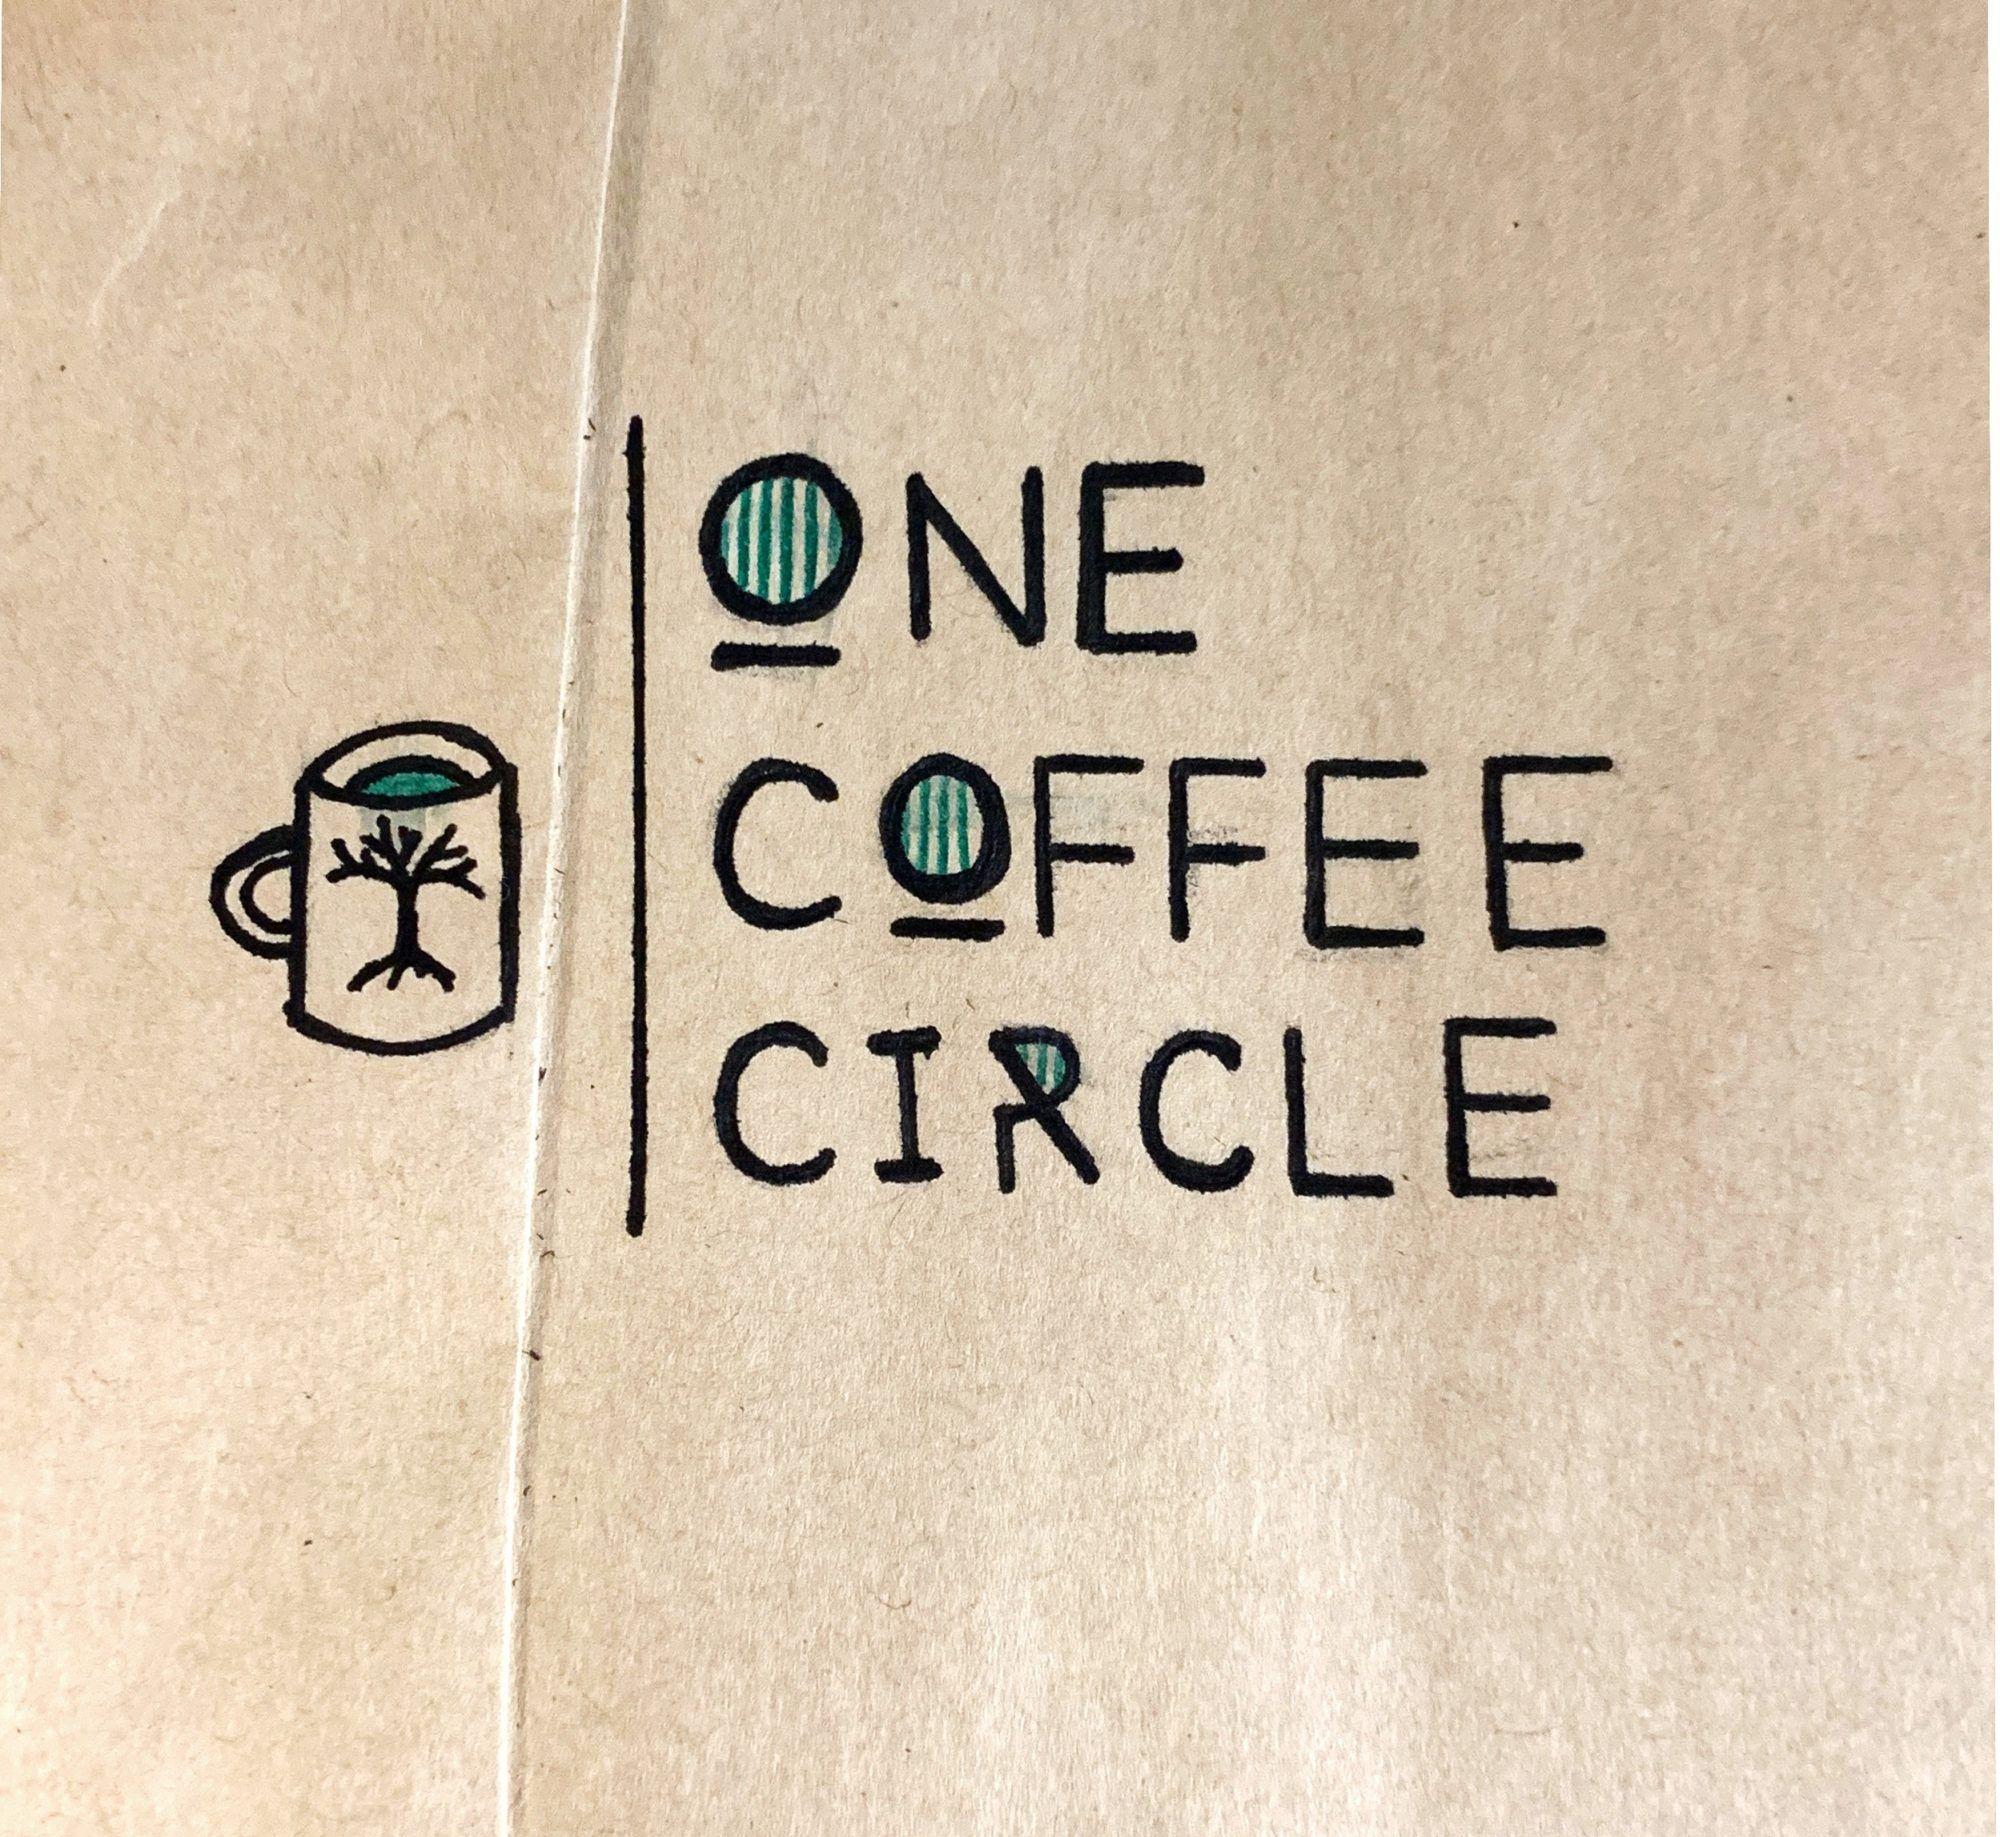 Coffee Circle Logo - One Coffee Circle